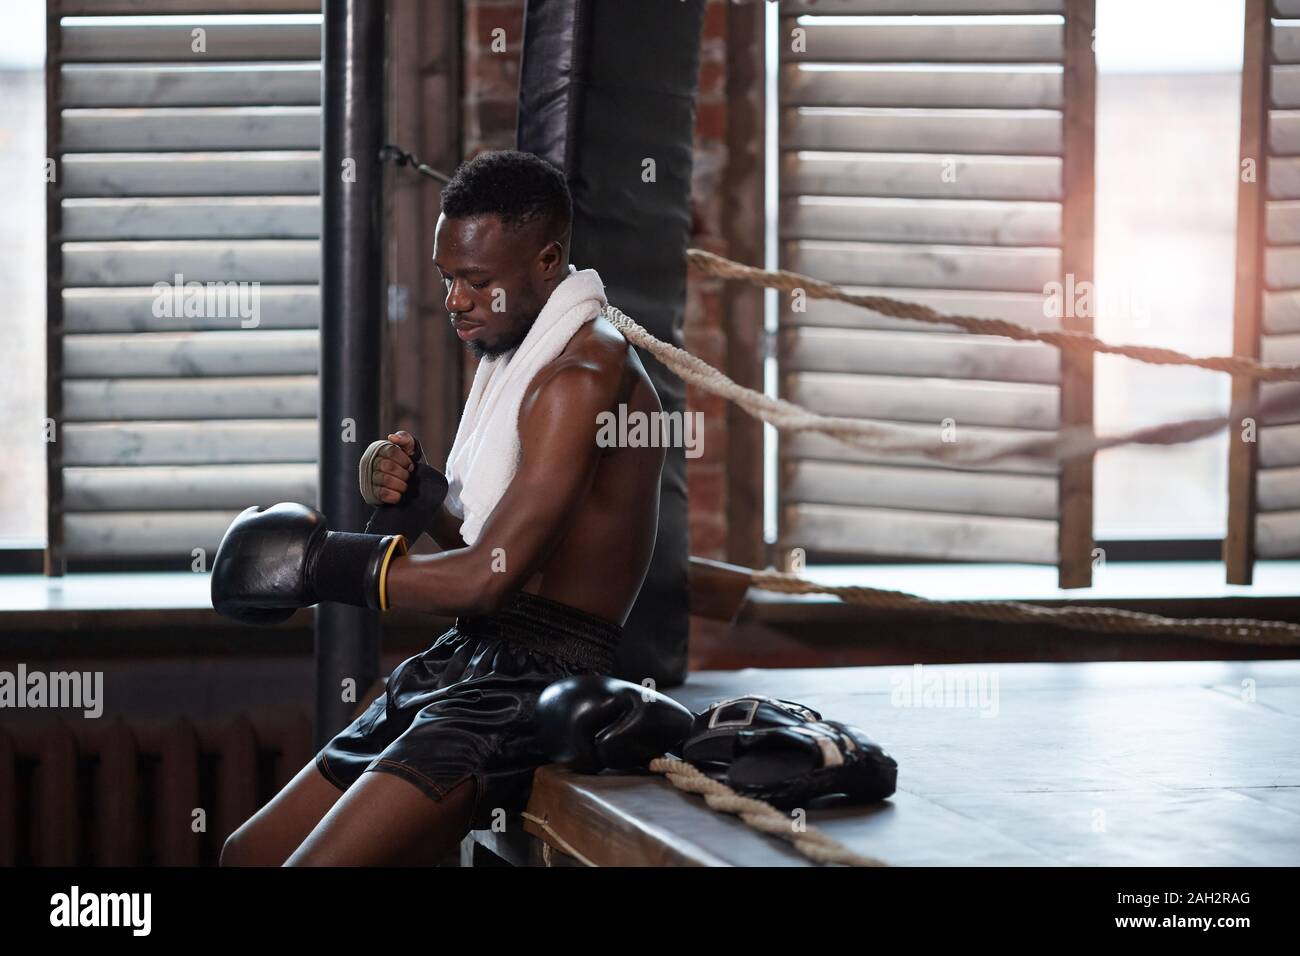 Boxer muscular africana sentada cerca del cuadrilátero vistiendo guantes de boxeo se prepara para luchar Foto de stock